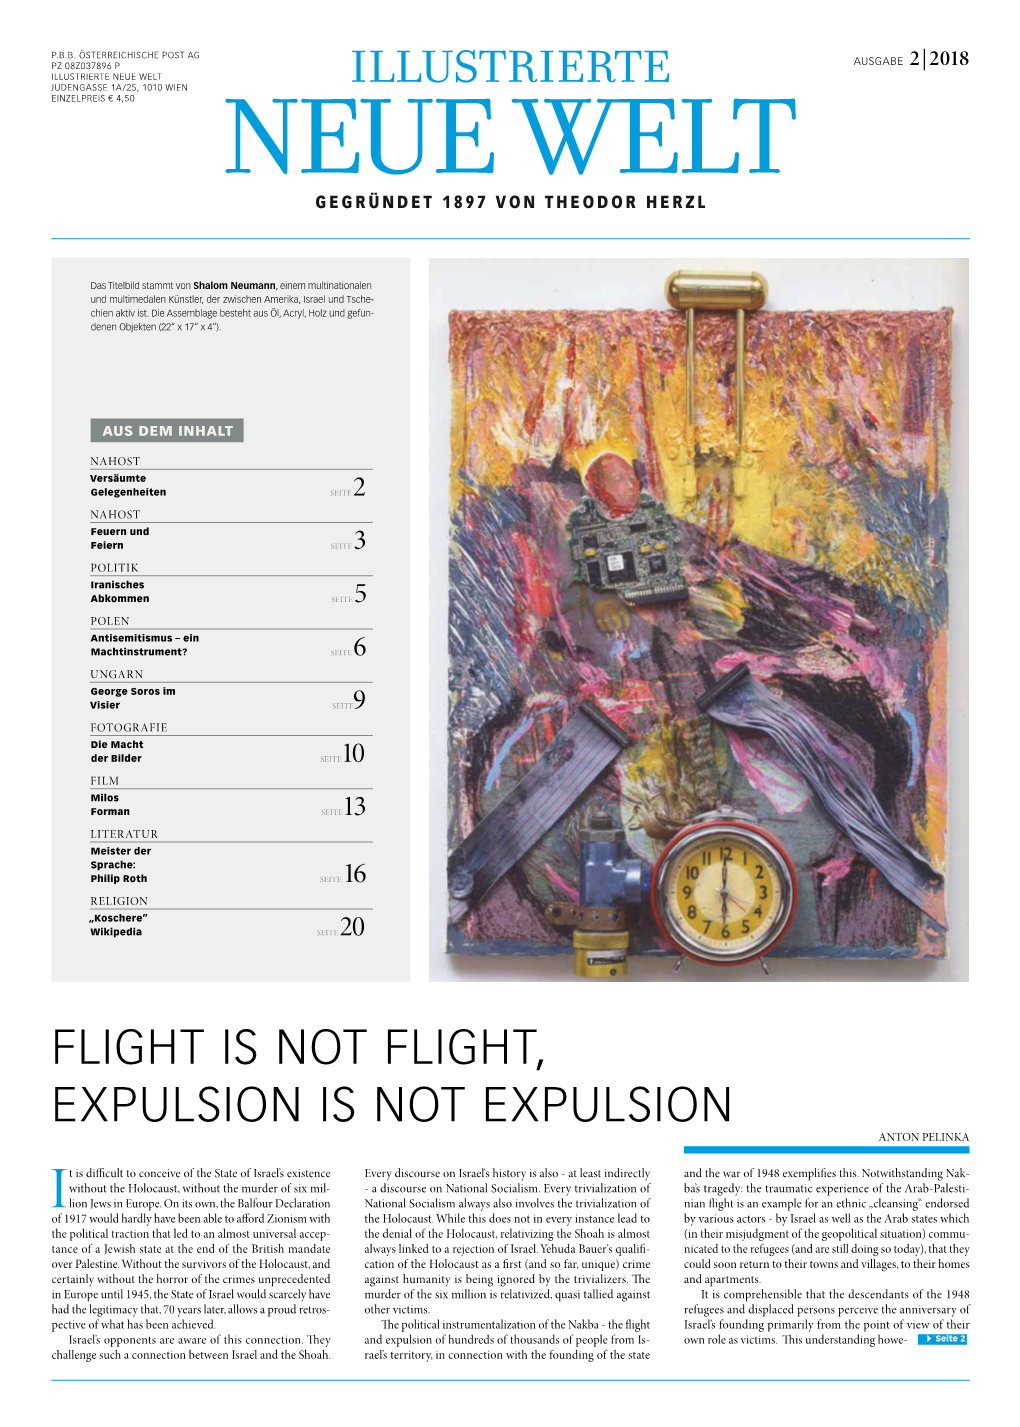 Flight Is Not Flight, Expulsion Is Not Expulsion